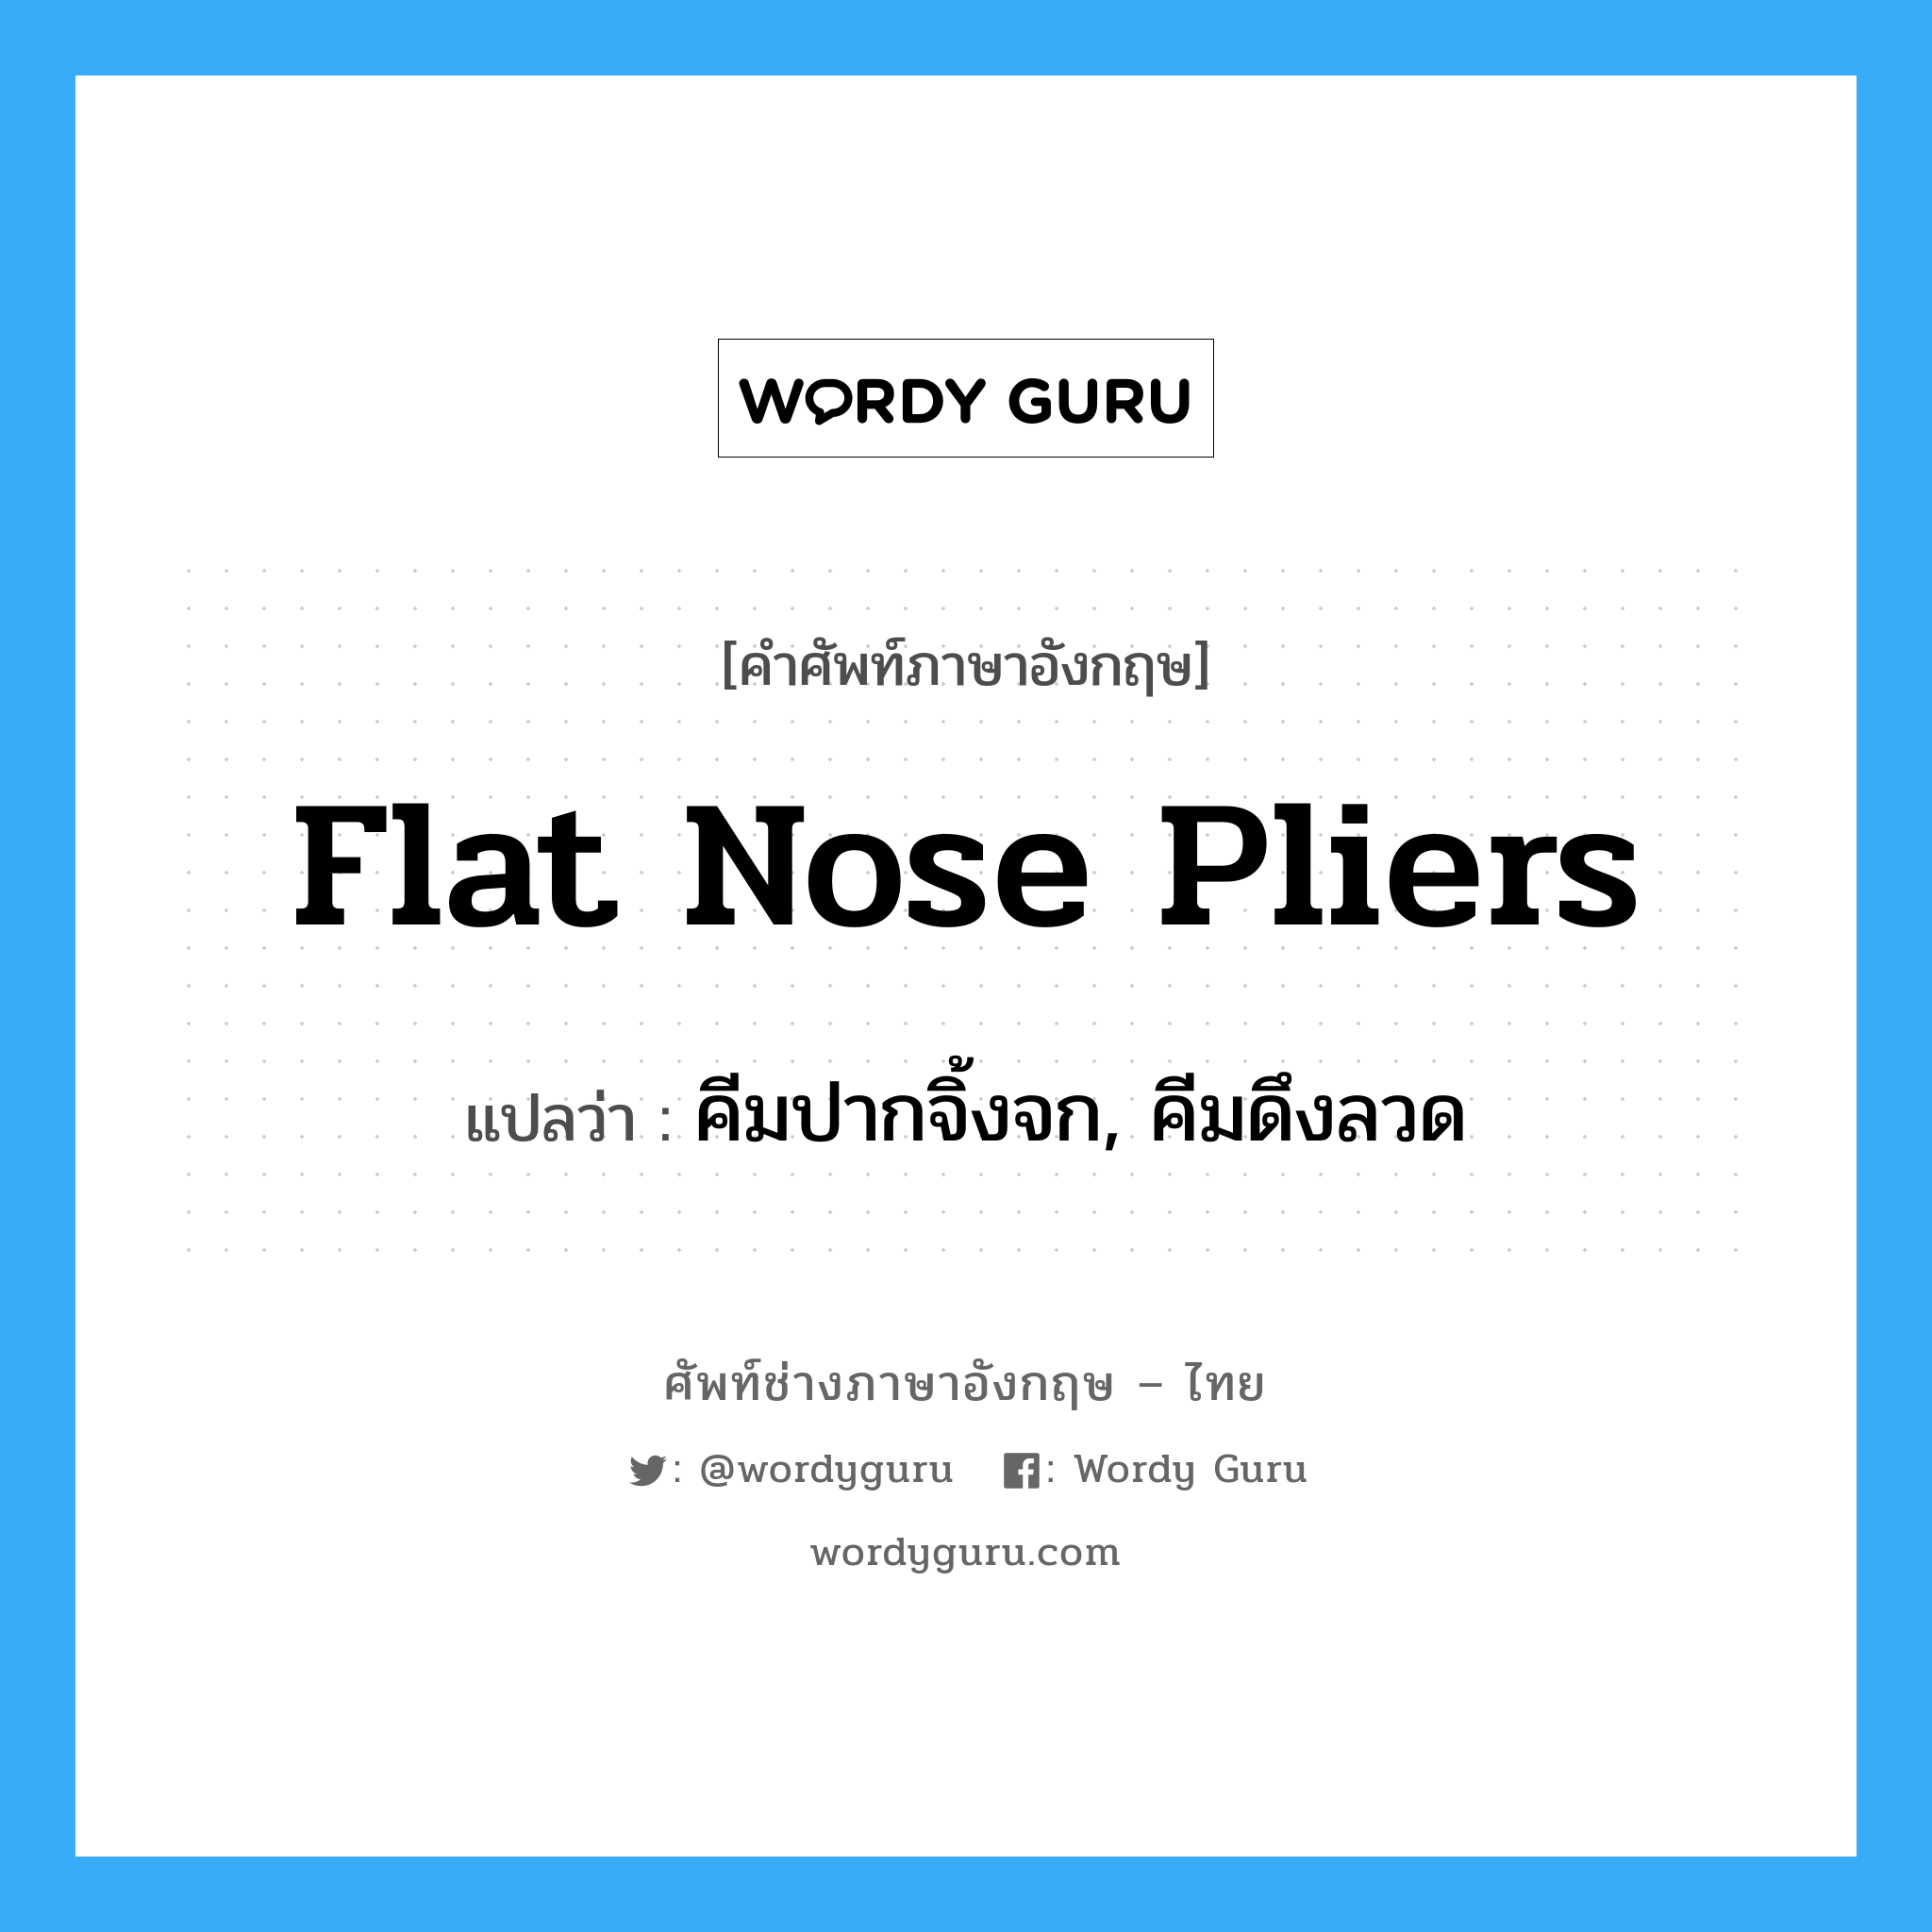 flat-nose pliers แปลว่า?, คำศัพท์ช่างภาษาอังกฤษ - ไทย flat nose pliers คำศัพท์ภาษาอังกฤษ flat nose pliers แปลว่า คีมปากจิ้งจก, คีมดึงลวด